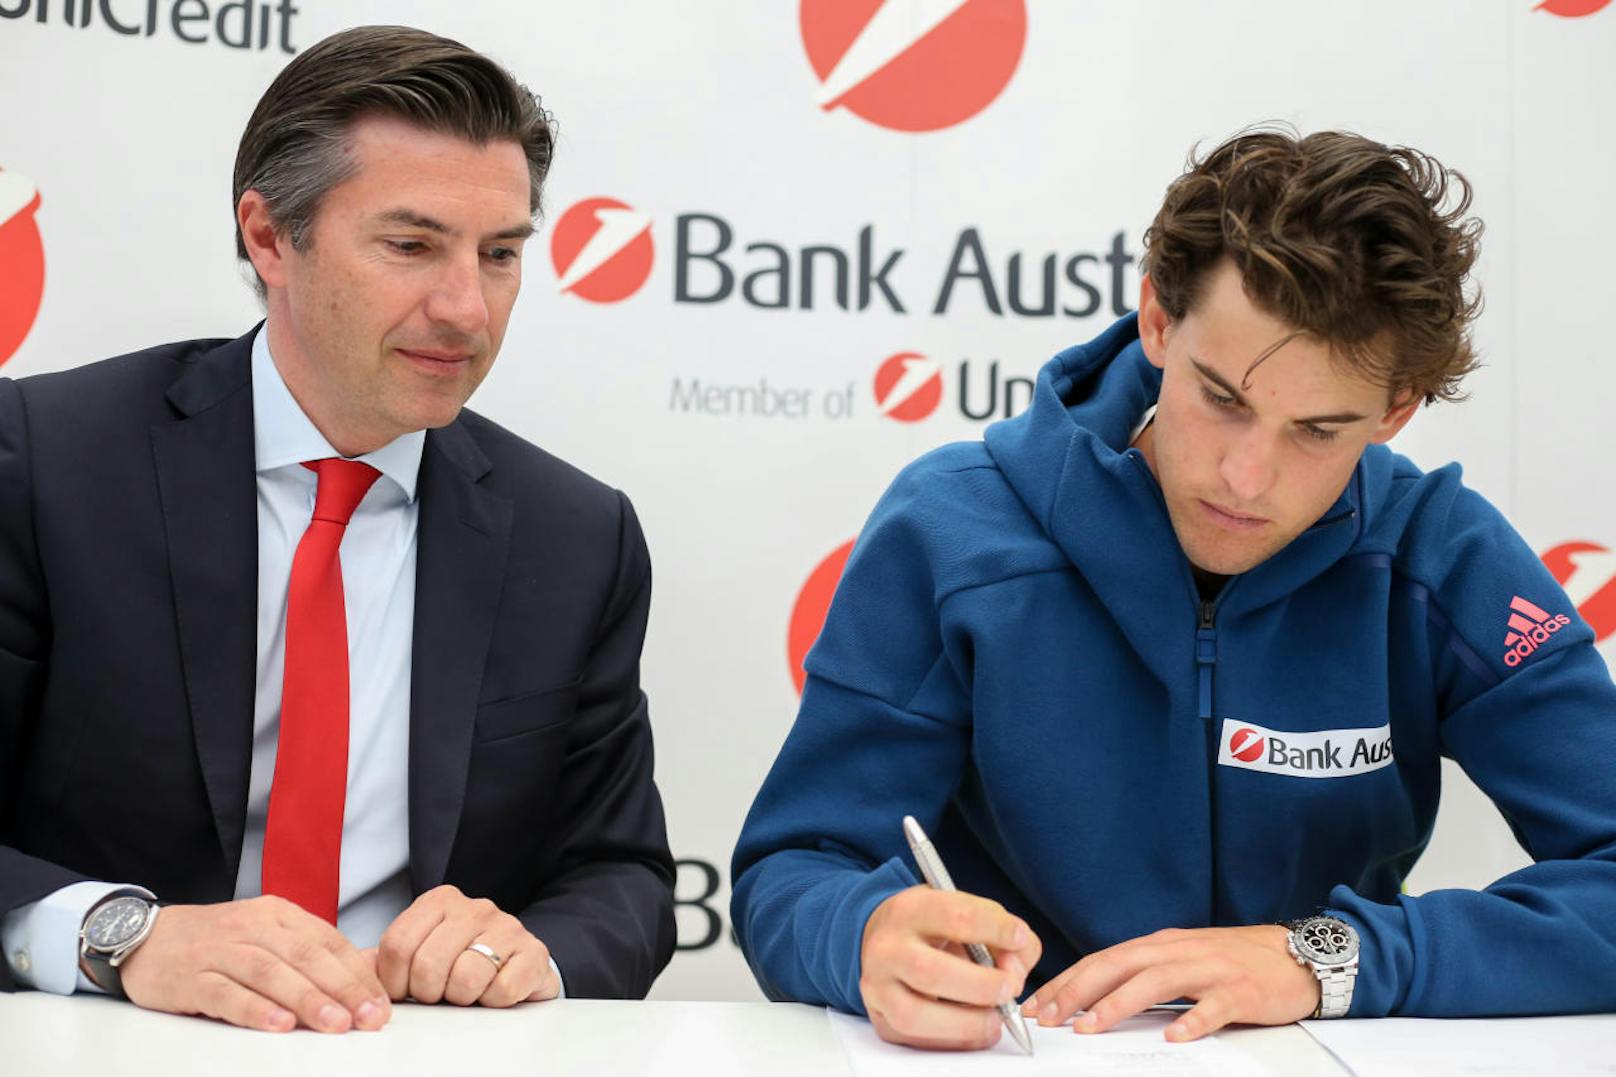 ... mit der UniCredit Bank Austria. Der 23-Jährige ist neuer Markenbotschafter des Geldinstituts (li. Vorstands-Boss Robert Zadrazil).